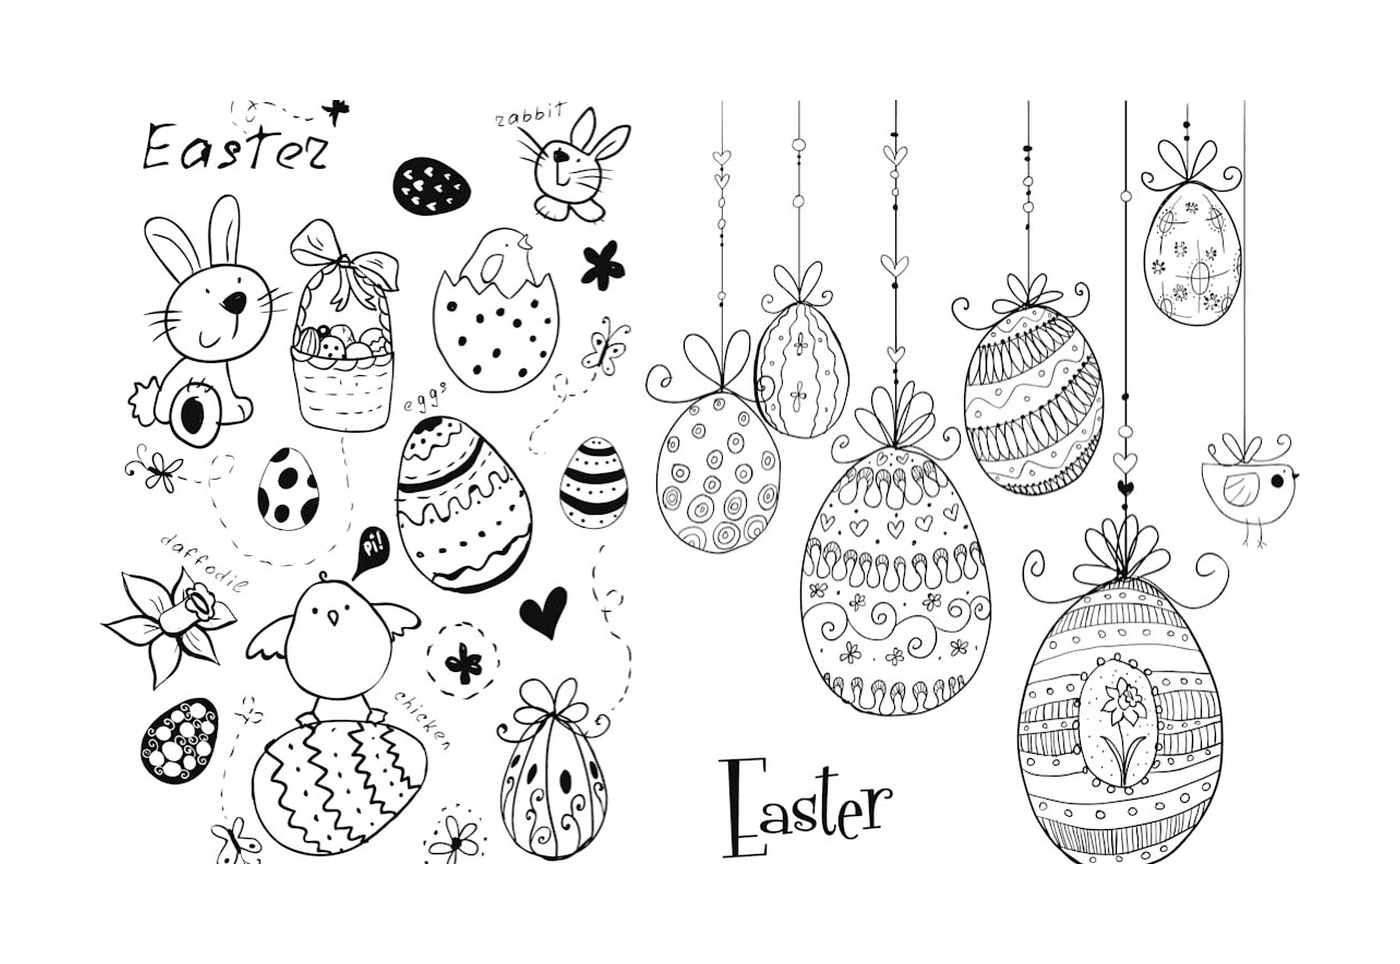 Doodles de Páscoa: ovos e coelhos